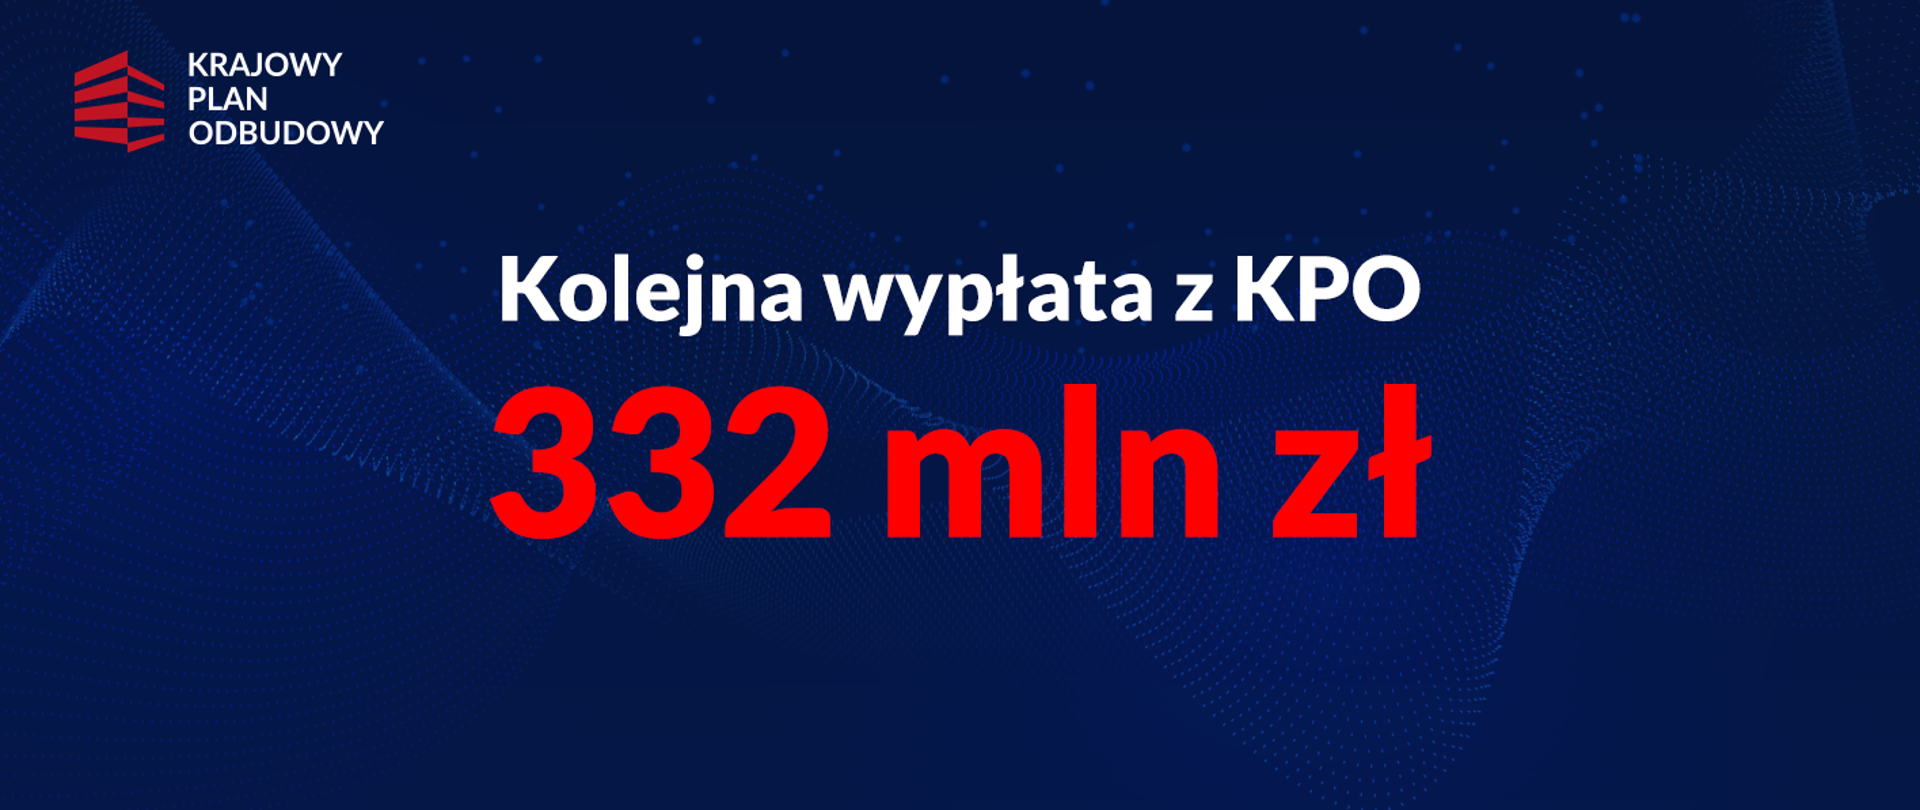 Napis: Kolejna wypłata z KPO - 332 mln zł, w lewym górnym rogu logo KPO